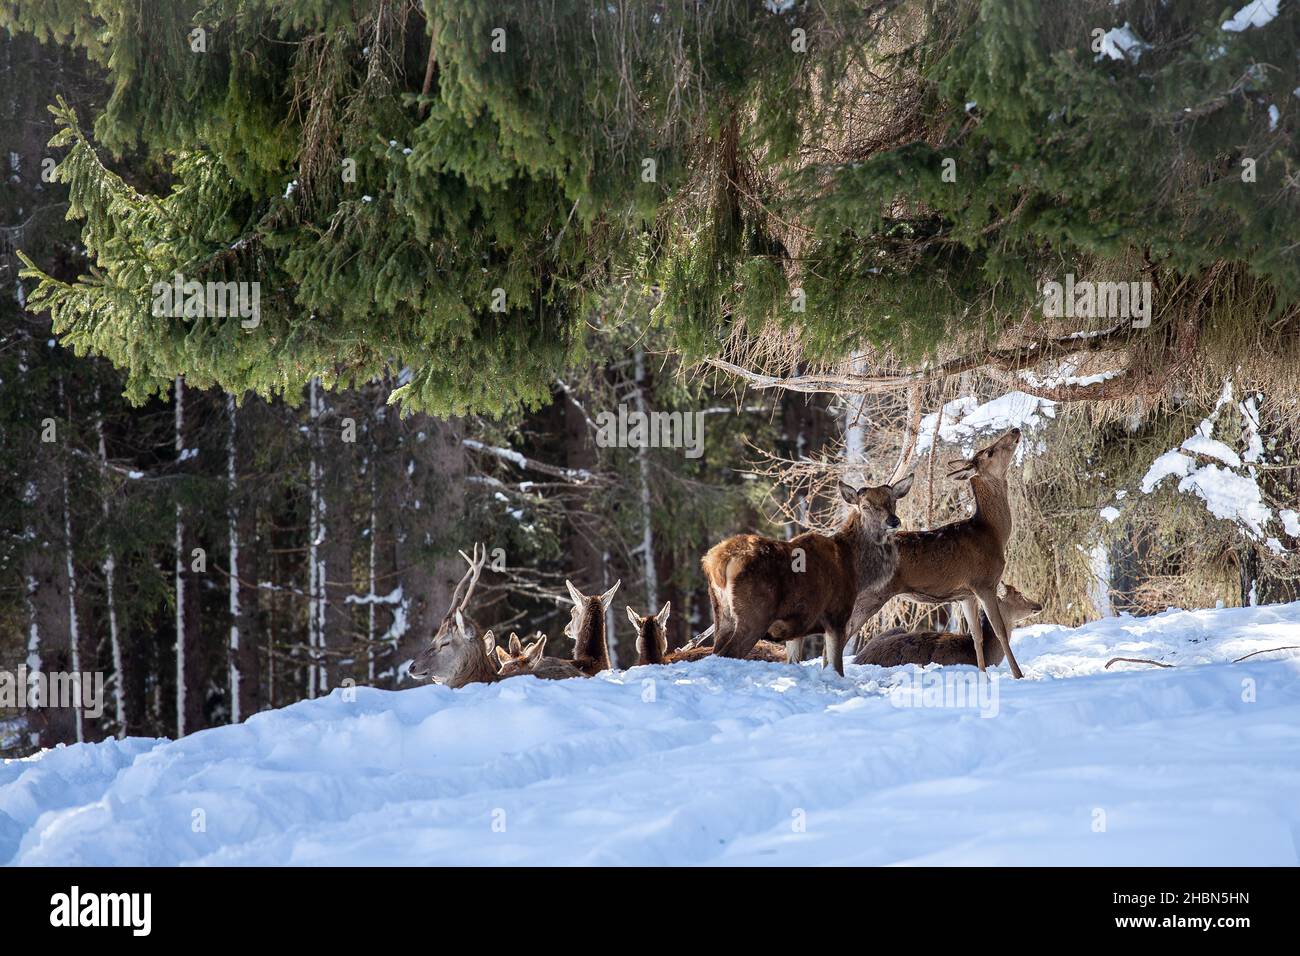 Cervus elaphus (Cervo rosso).  The Red deer in the Paneveggio  coniferous forest. The Trentino Dolomites. Italian Alps. Europe. Stock Photo